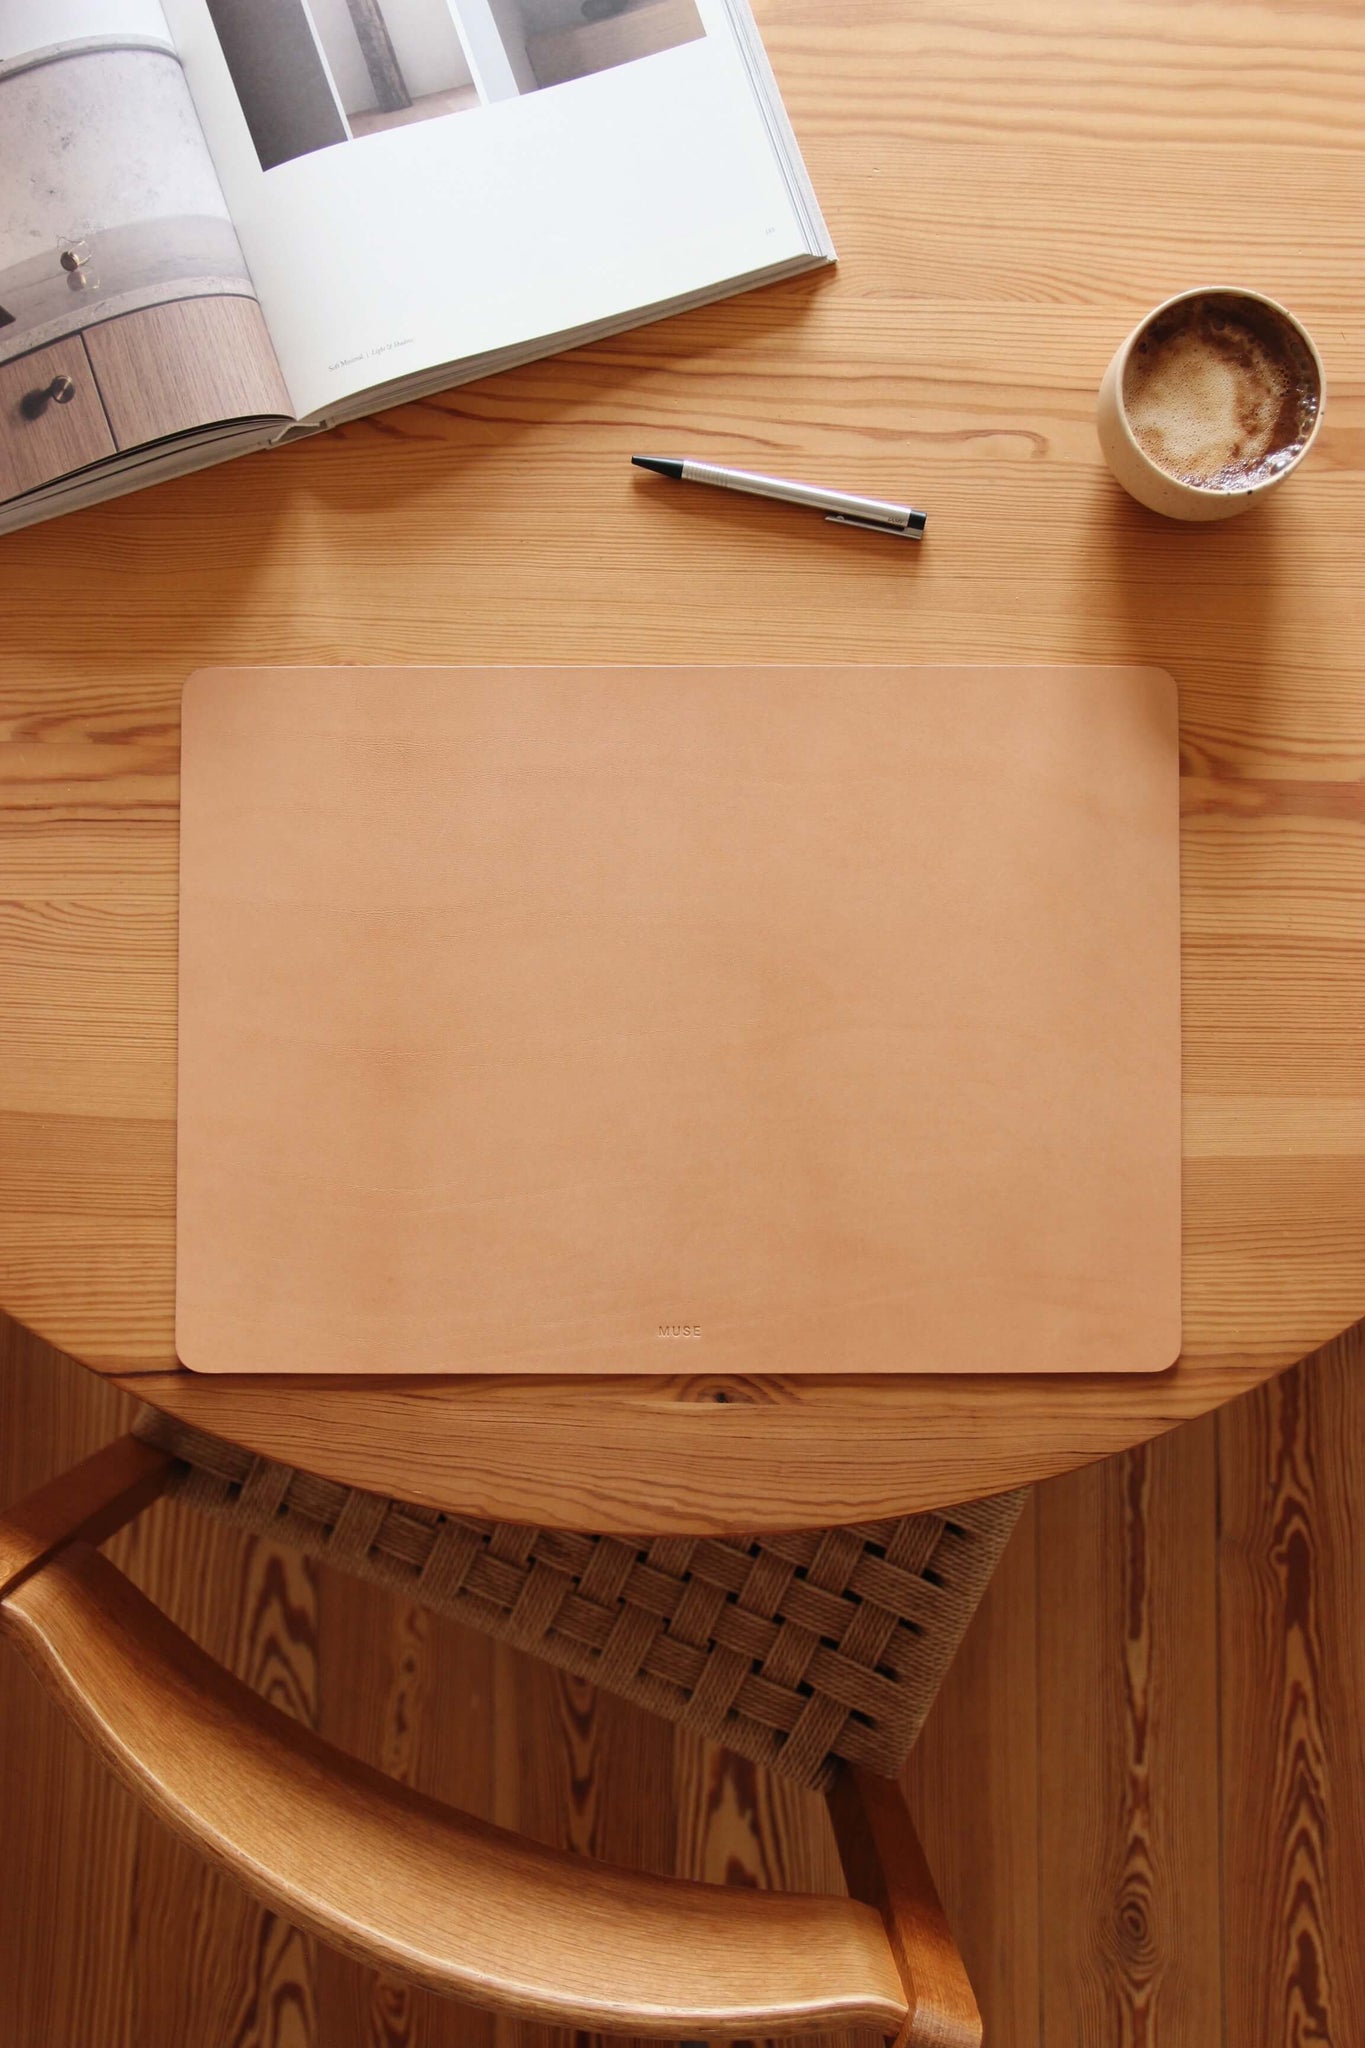 Auf einem Holztisch liegt eine Schreibtischunterlage aus Leder in Natural und als Dekoration eine Kaffeetasse, ein Stift und ein aufgeklapptes Buch.